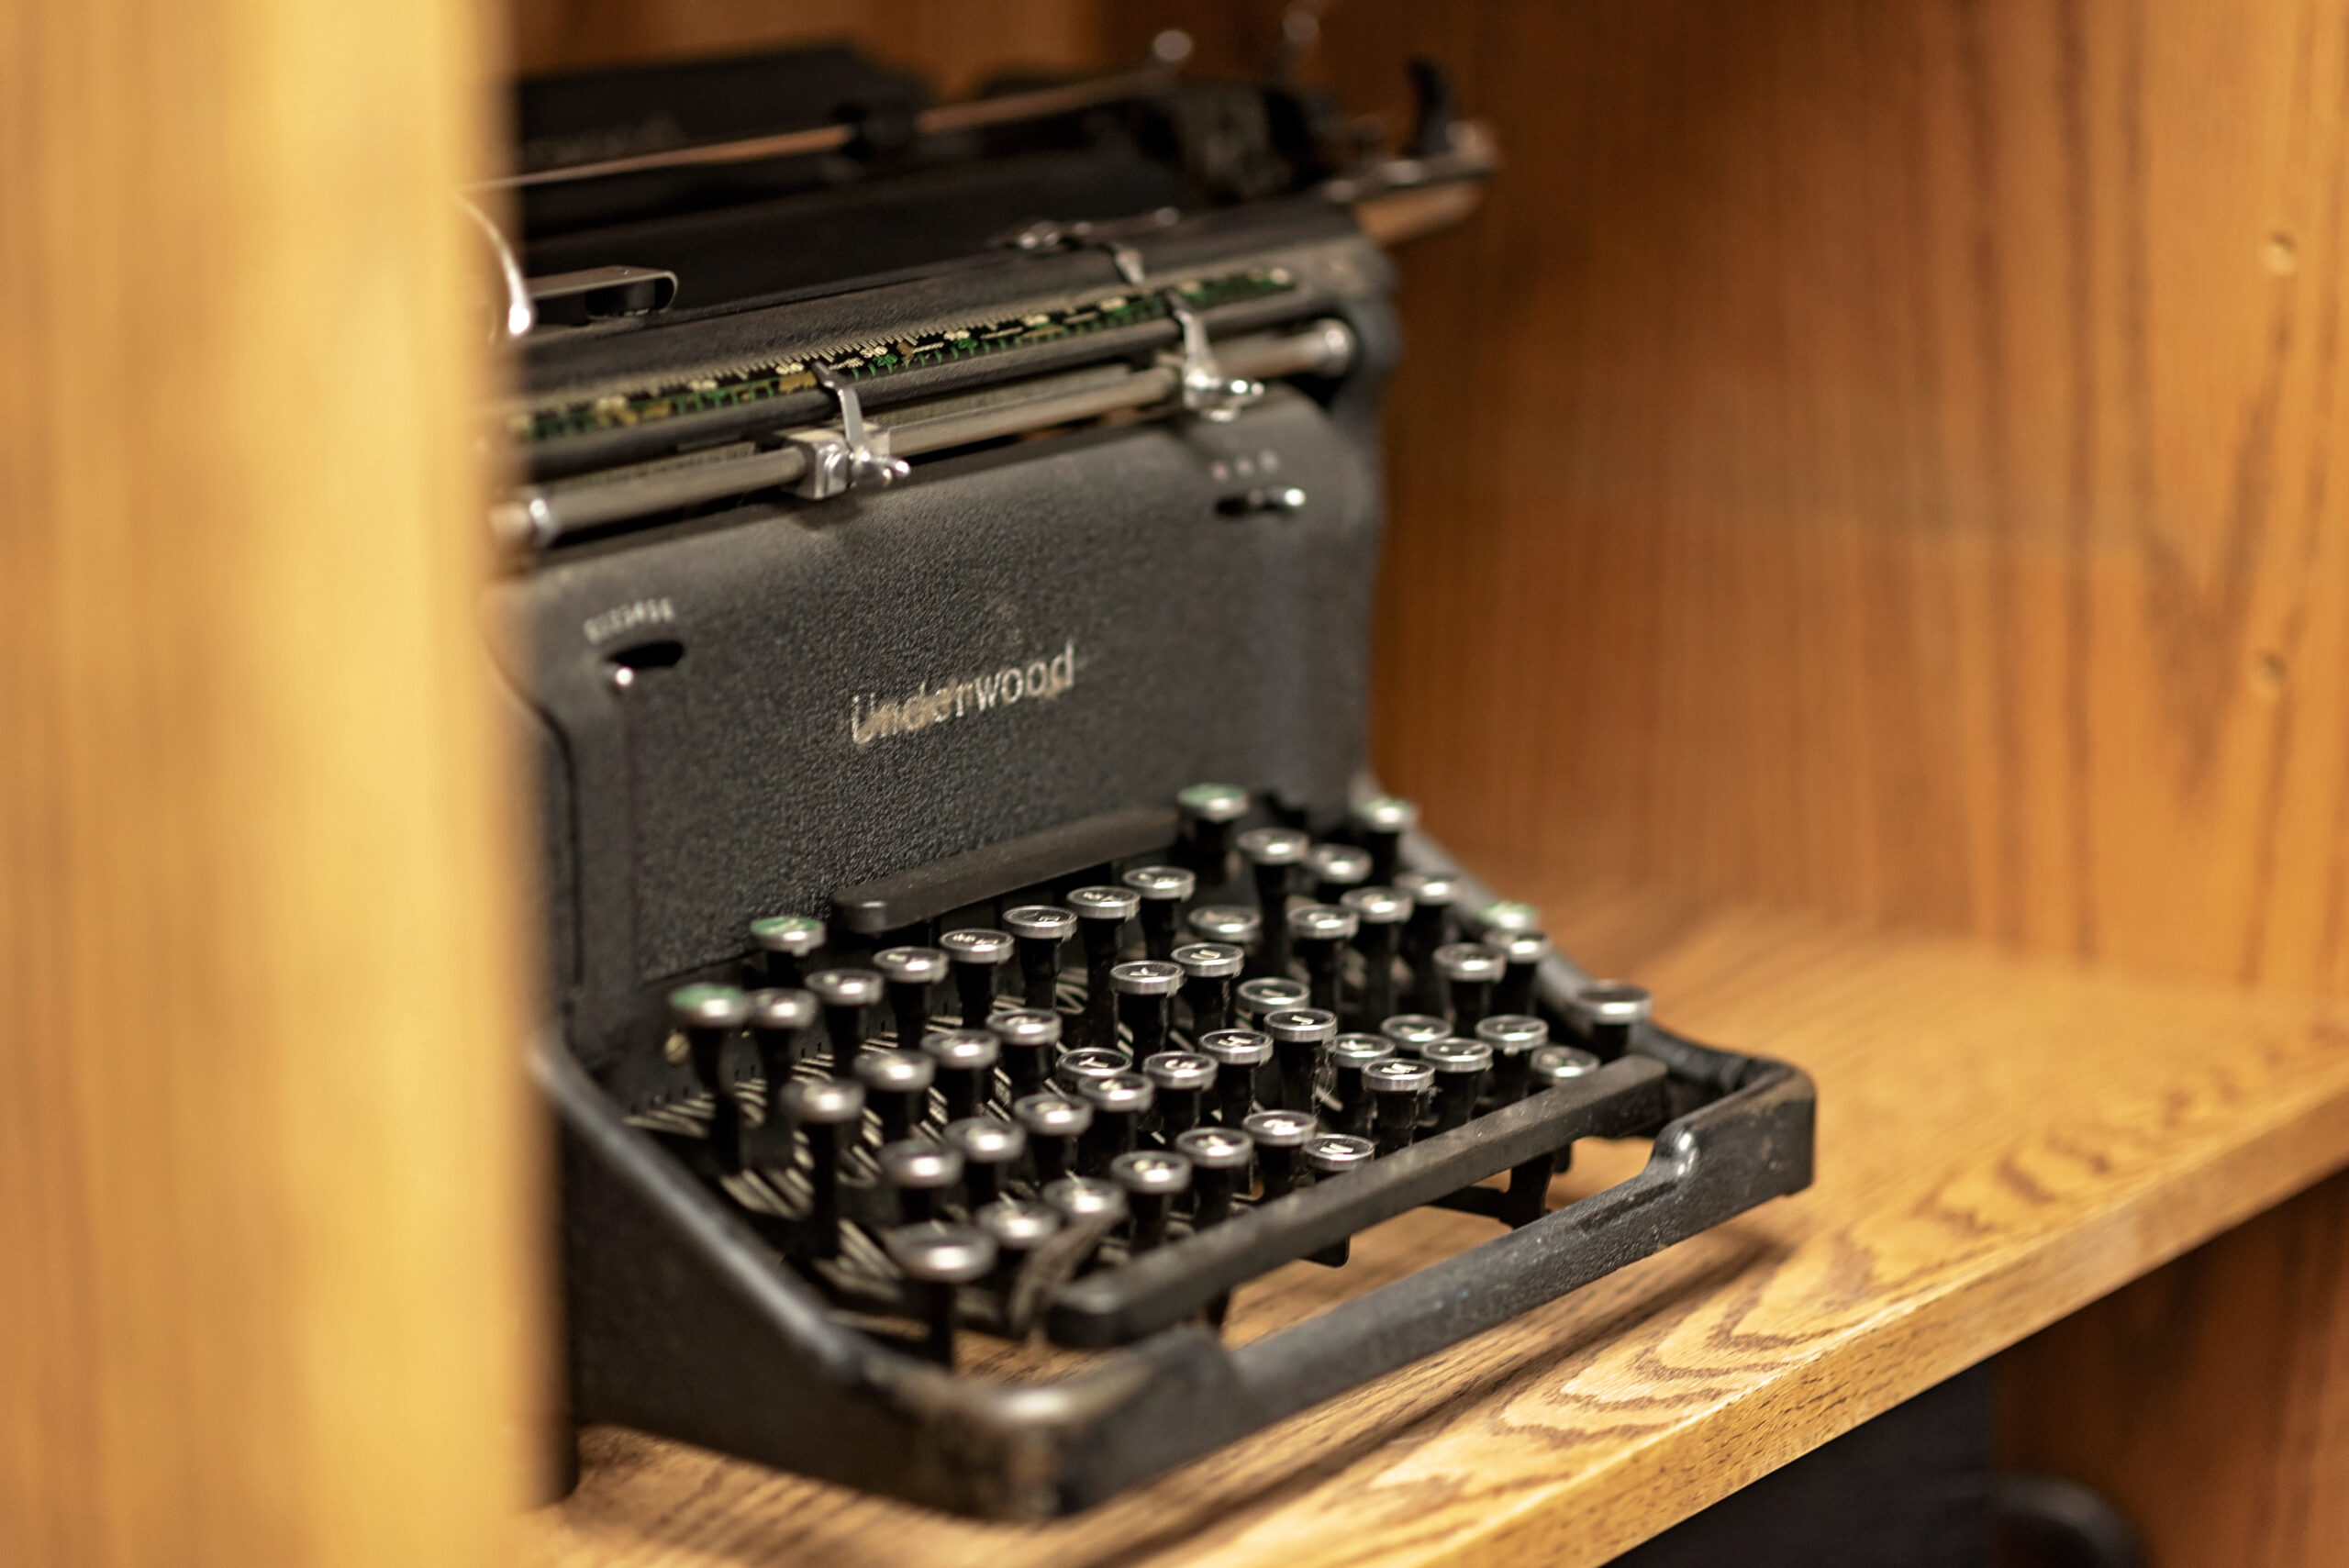 Old typewriter on a shelf